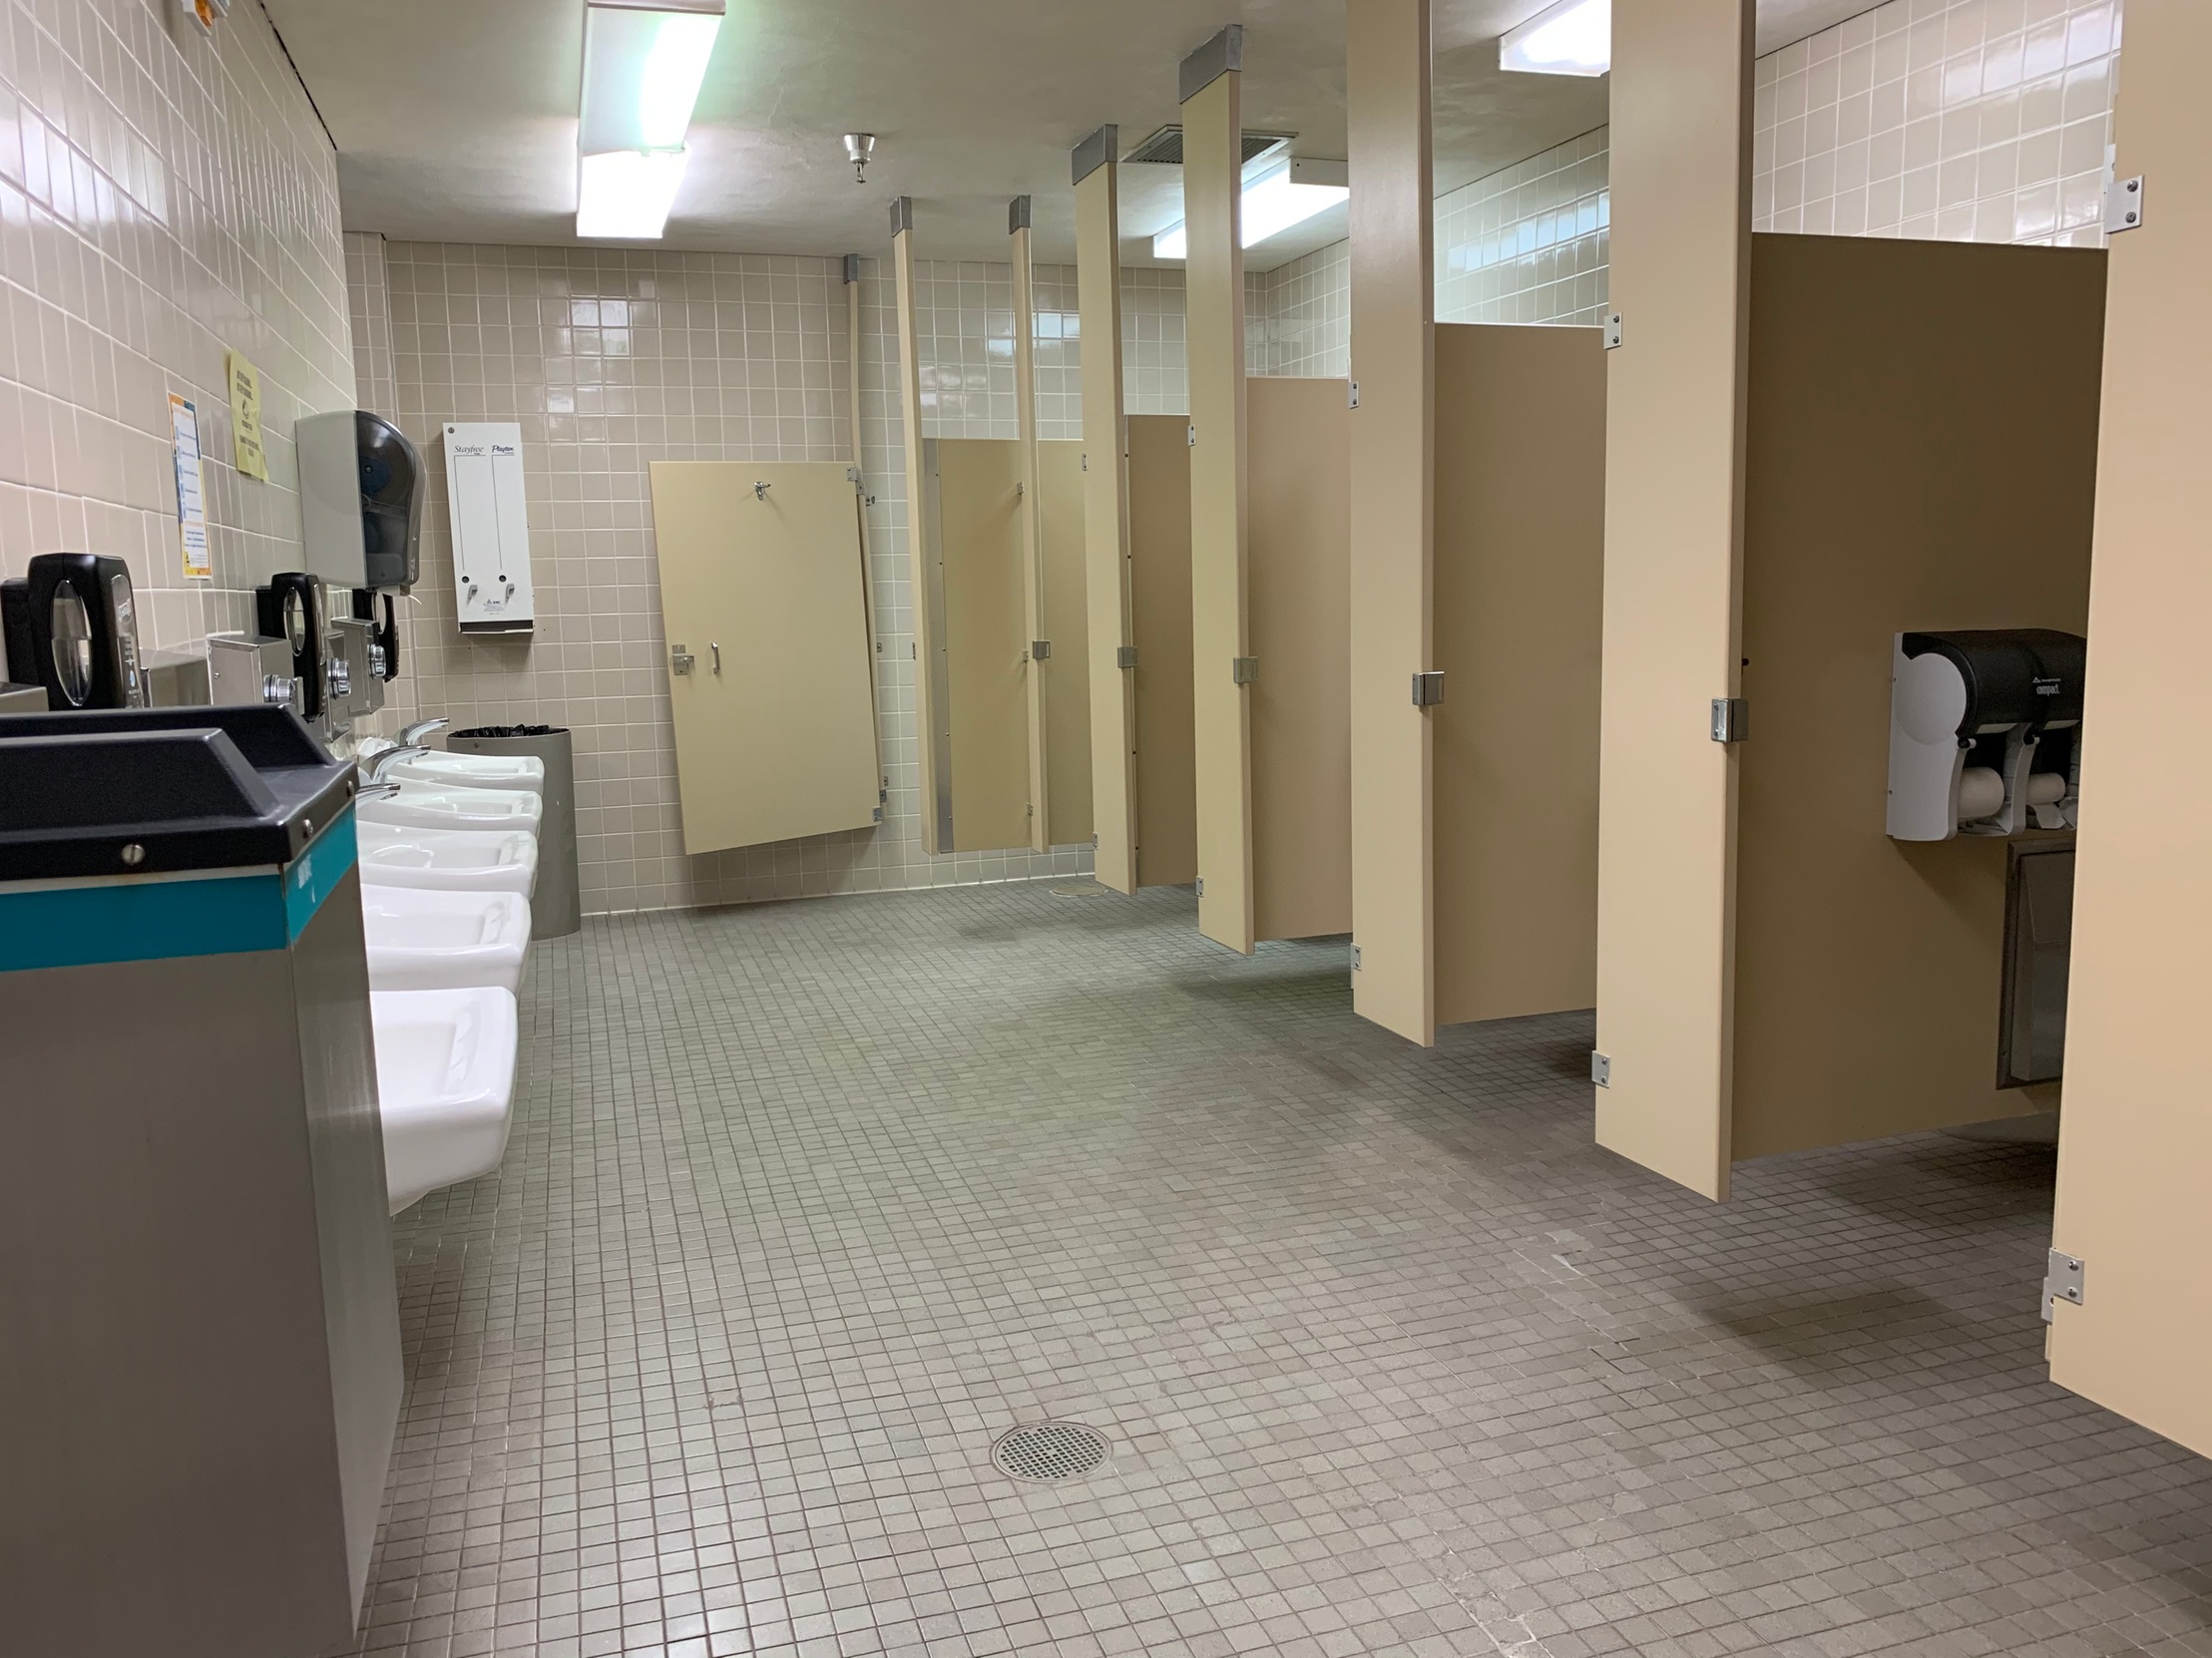 Restroom area, SDC Women's Public Locker Room 109